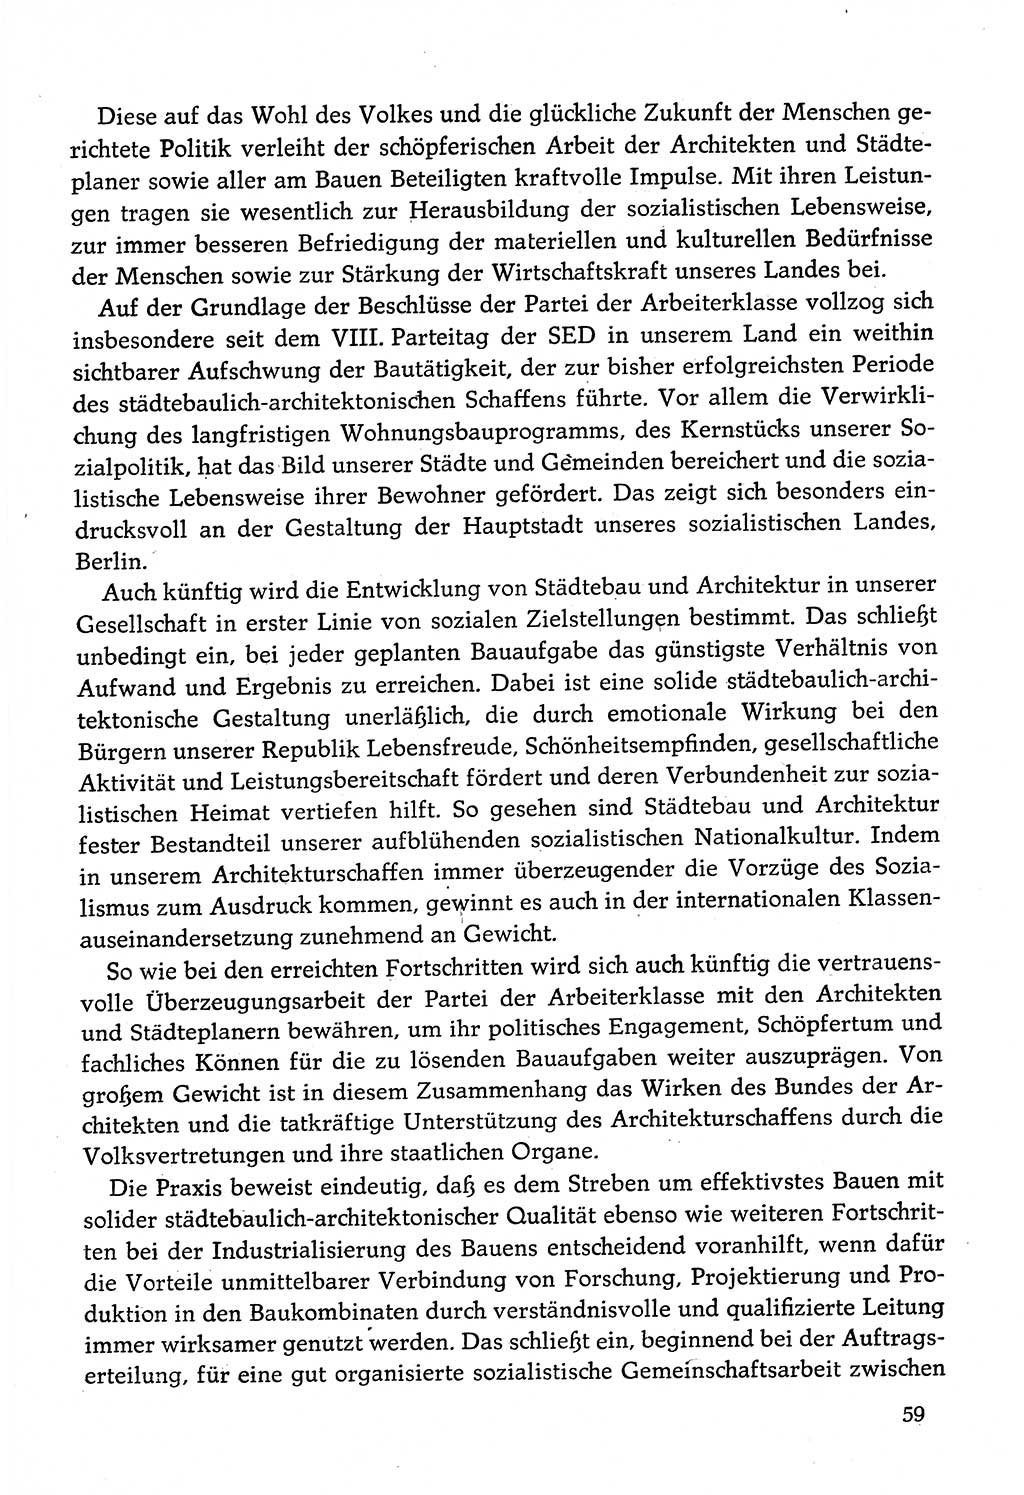 Dokumente der Sozialistischen Einheitspartei Deutschlands (SED) [Deutsche Demokratische Republik (DDR)] 1982-1983, Seite 59 (Dok. SED DDR 1982-1983, S. 59)